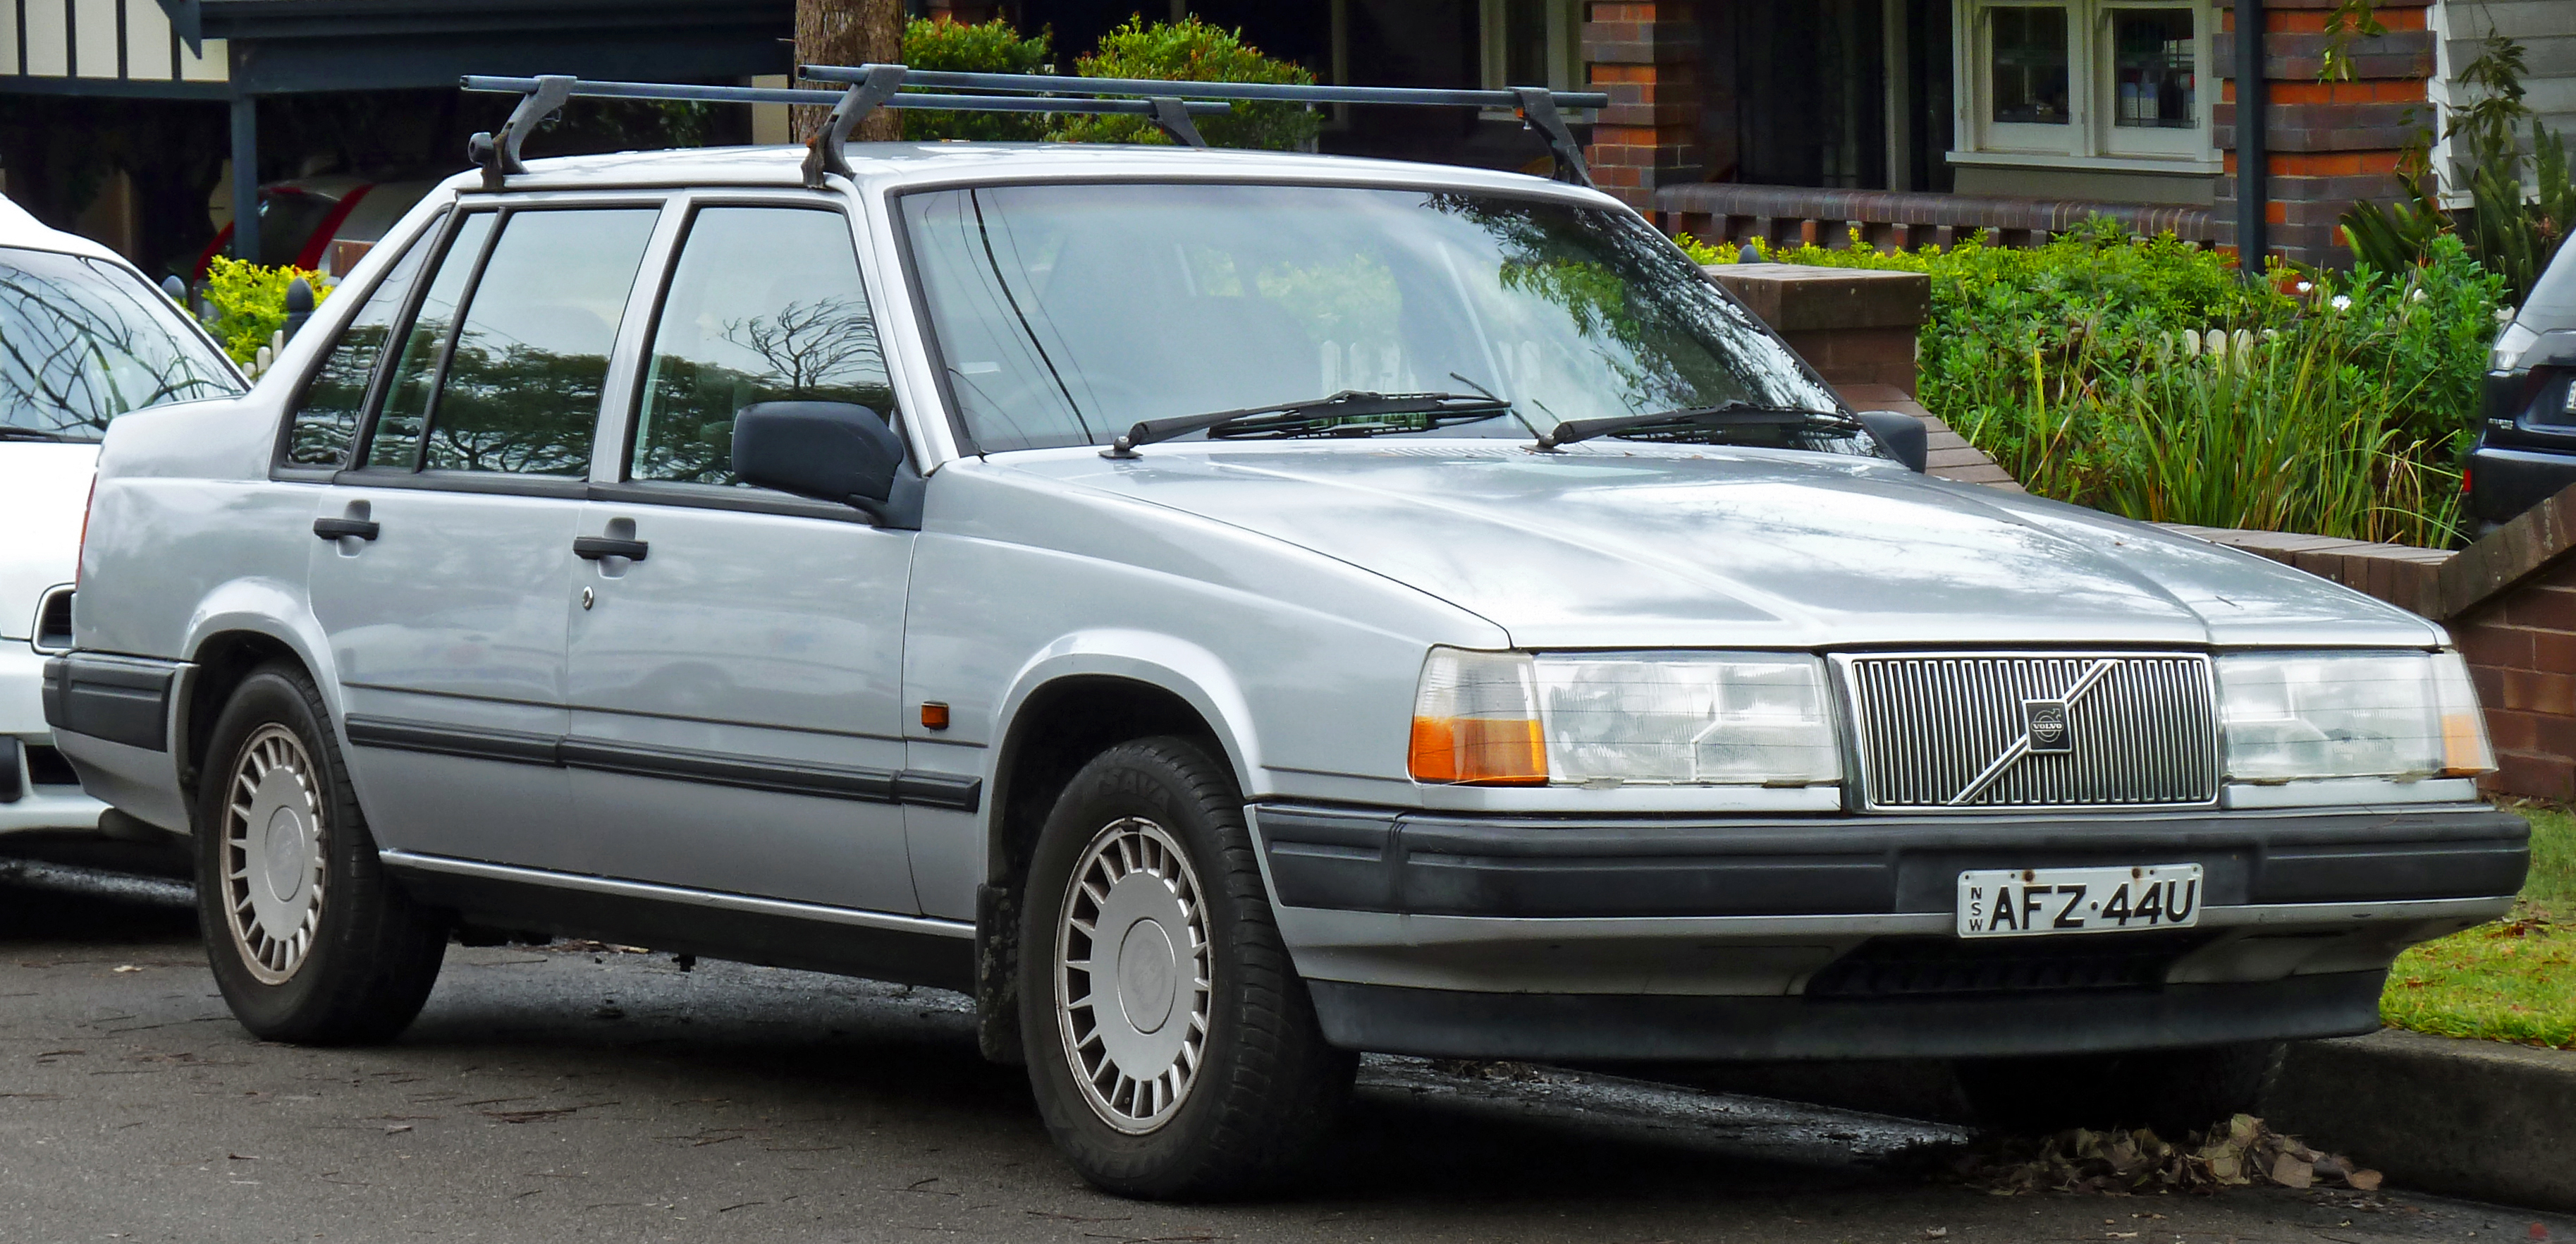 Dossier: Berline Volvo 940 GL 1990-1993 (15/06/2011)